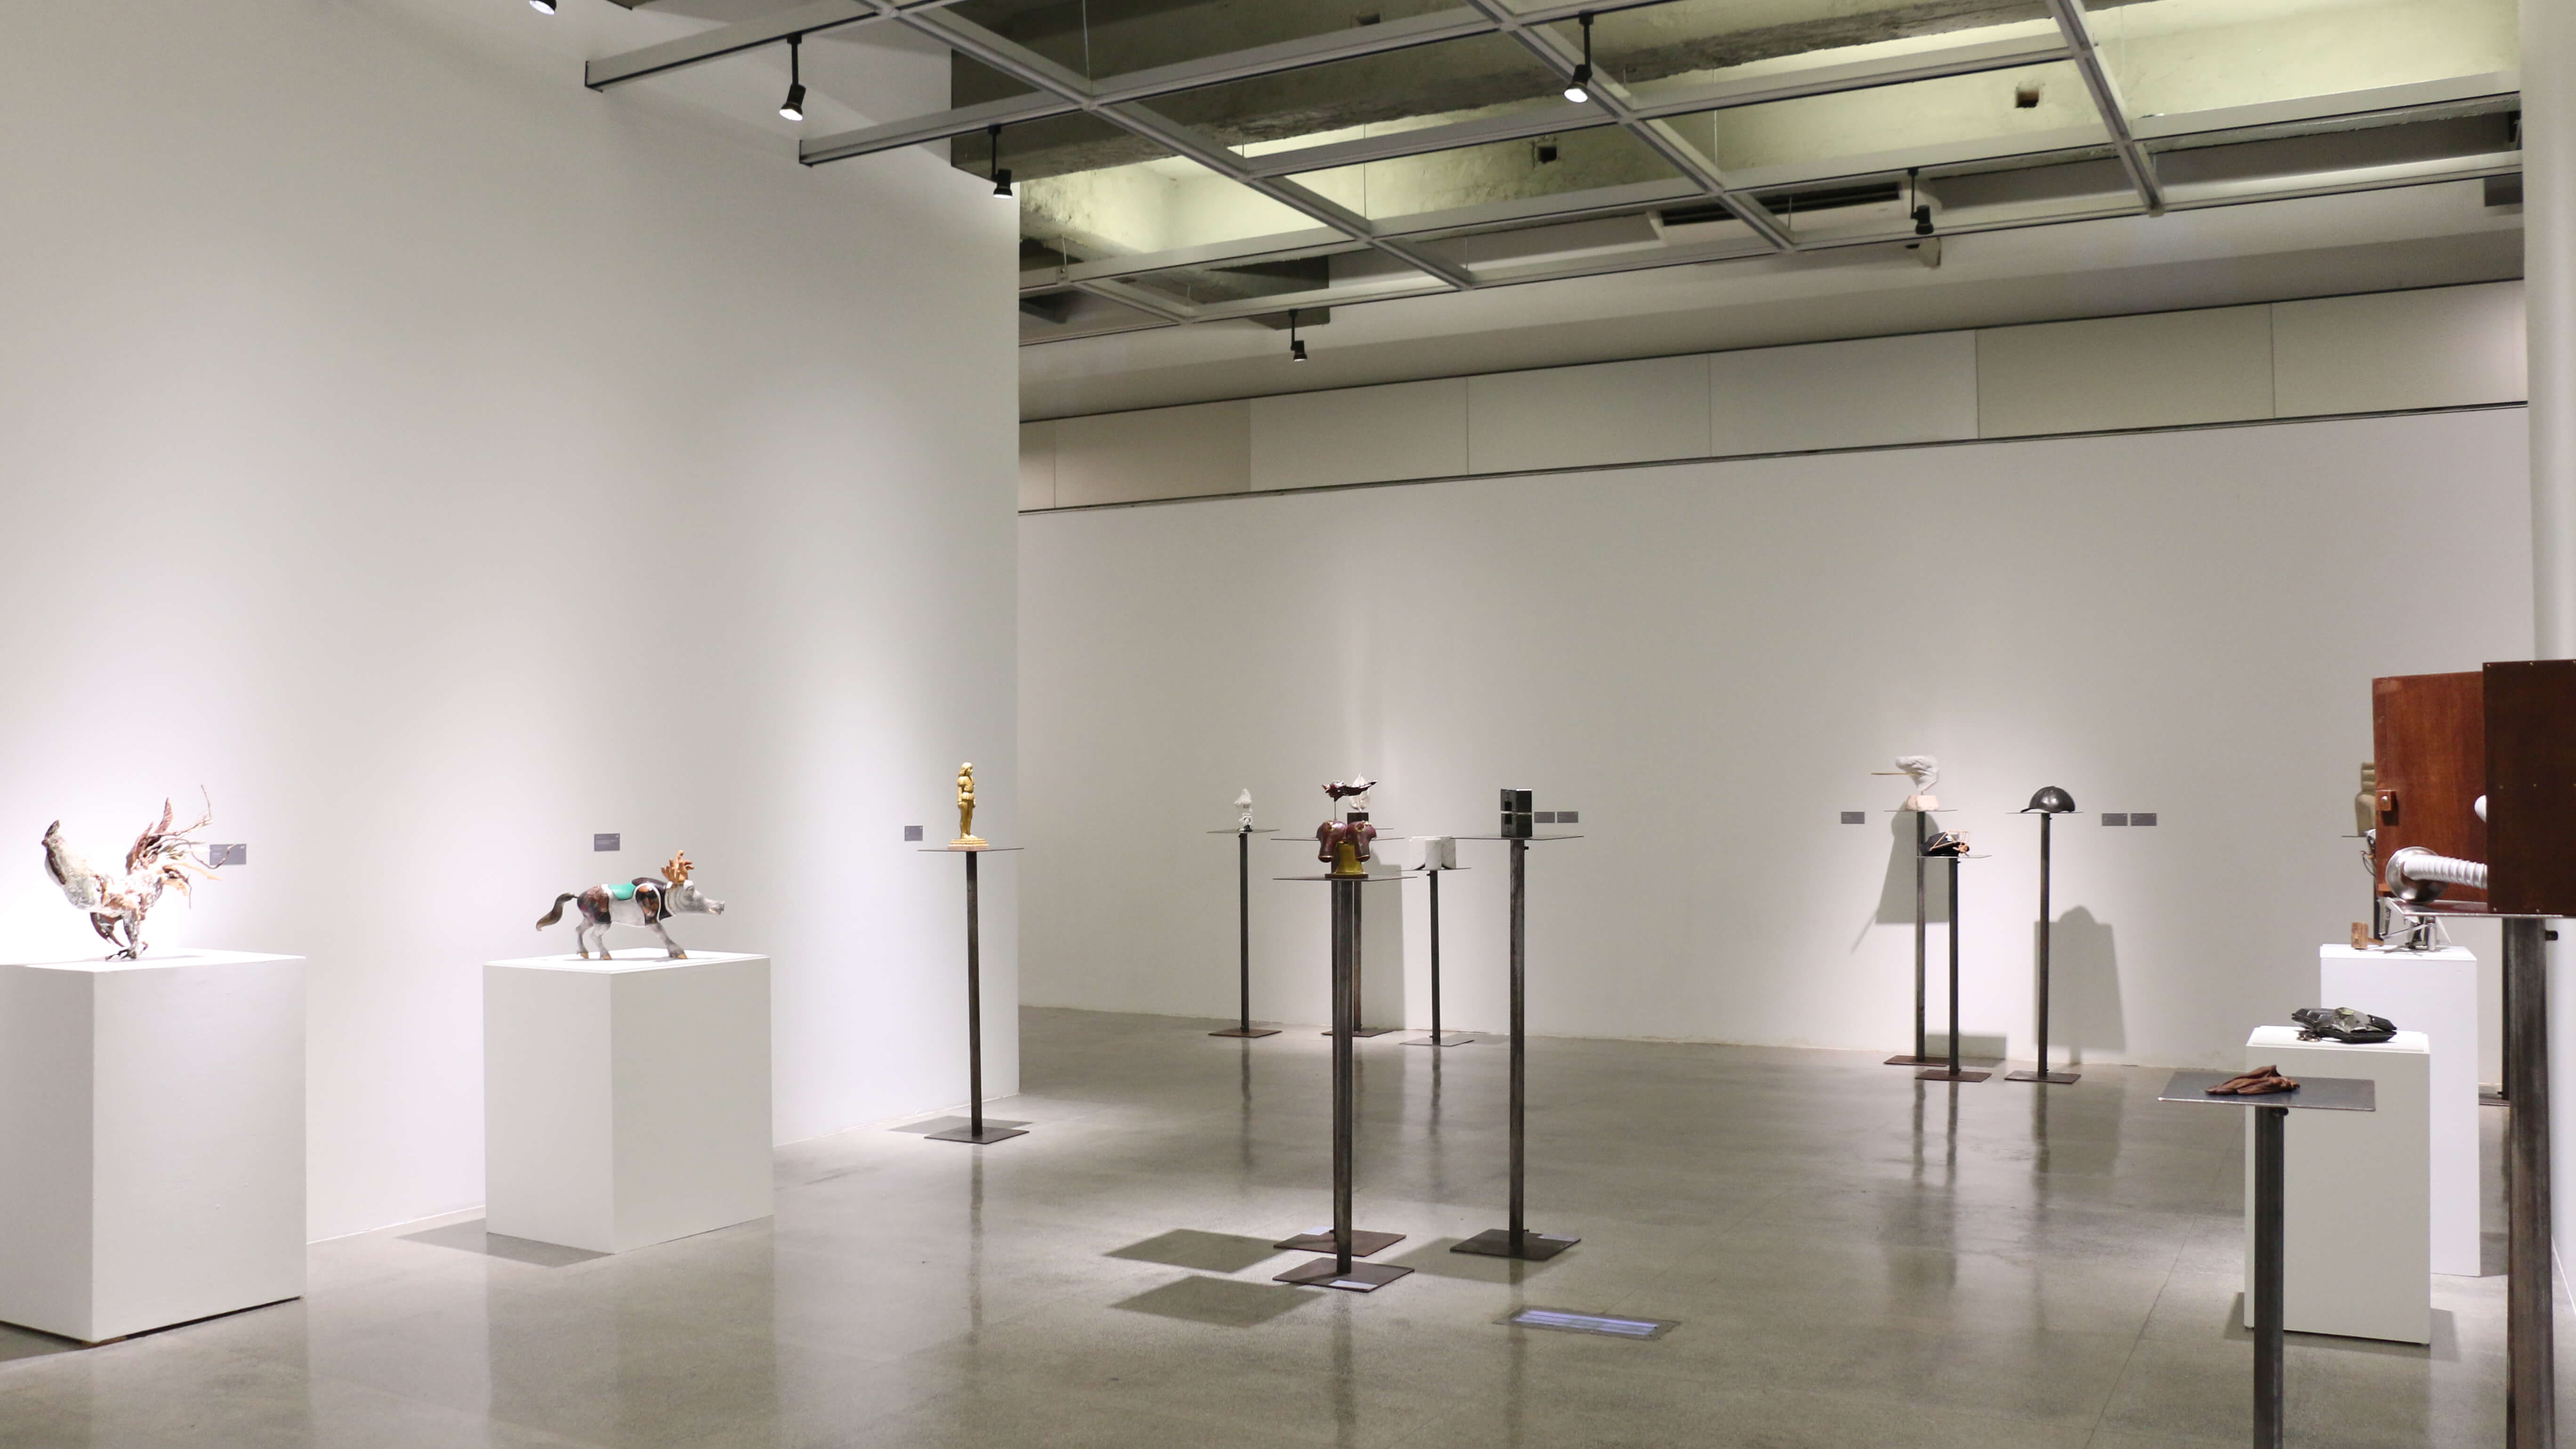 宜蘭美術館101展覽室。圖 / 國際袖珍雕塑展提供